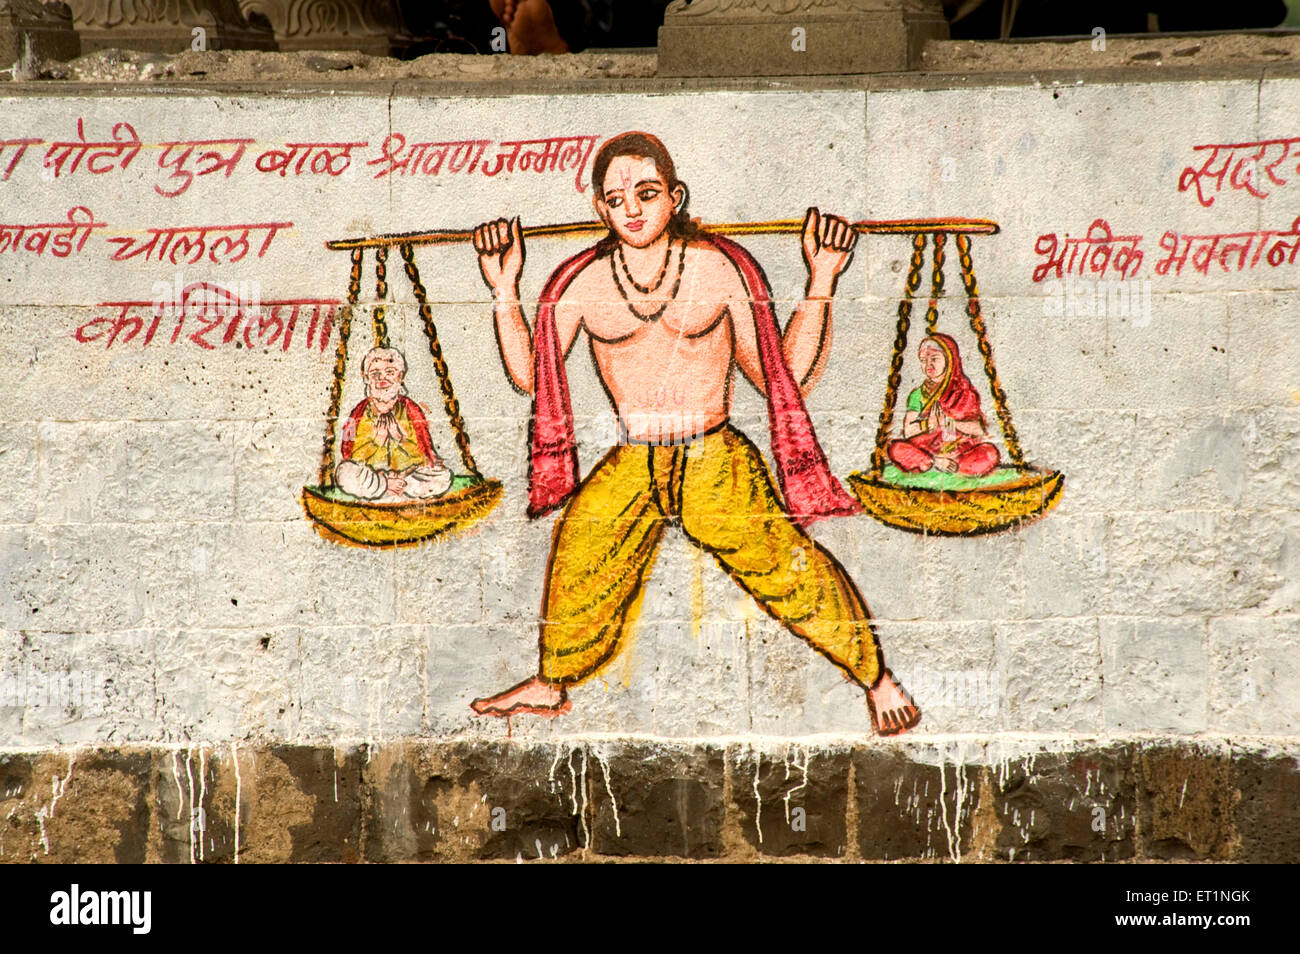 Shravan portant son père et mère de la peinture sur mur à pandharpur Mumbai maharashtra Inde - 165626 stp Banque D'Images